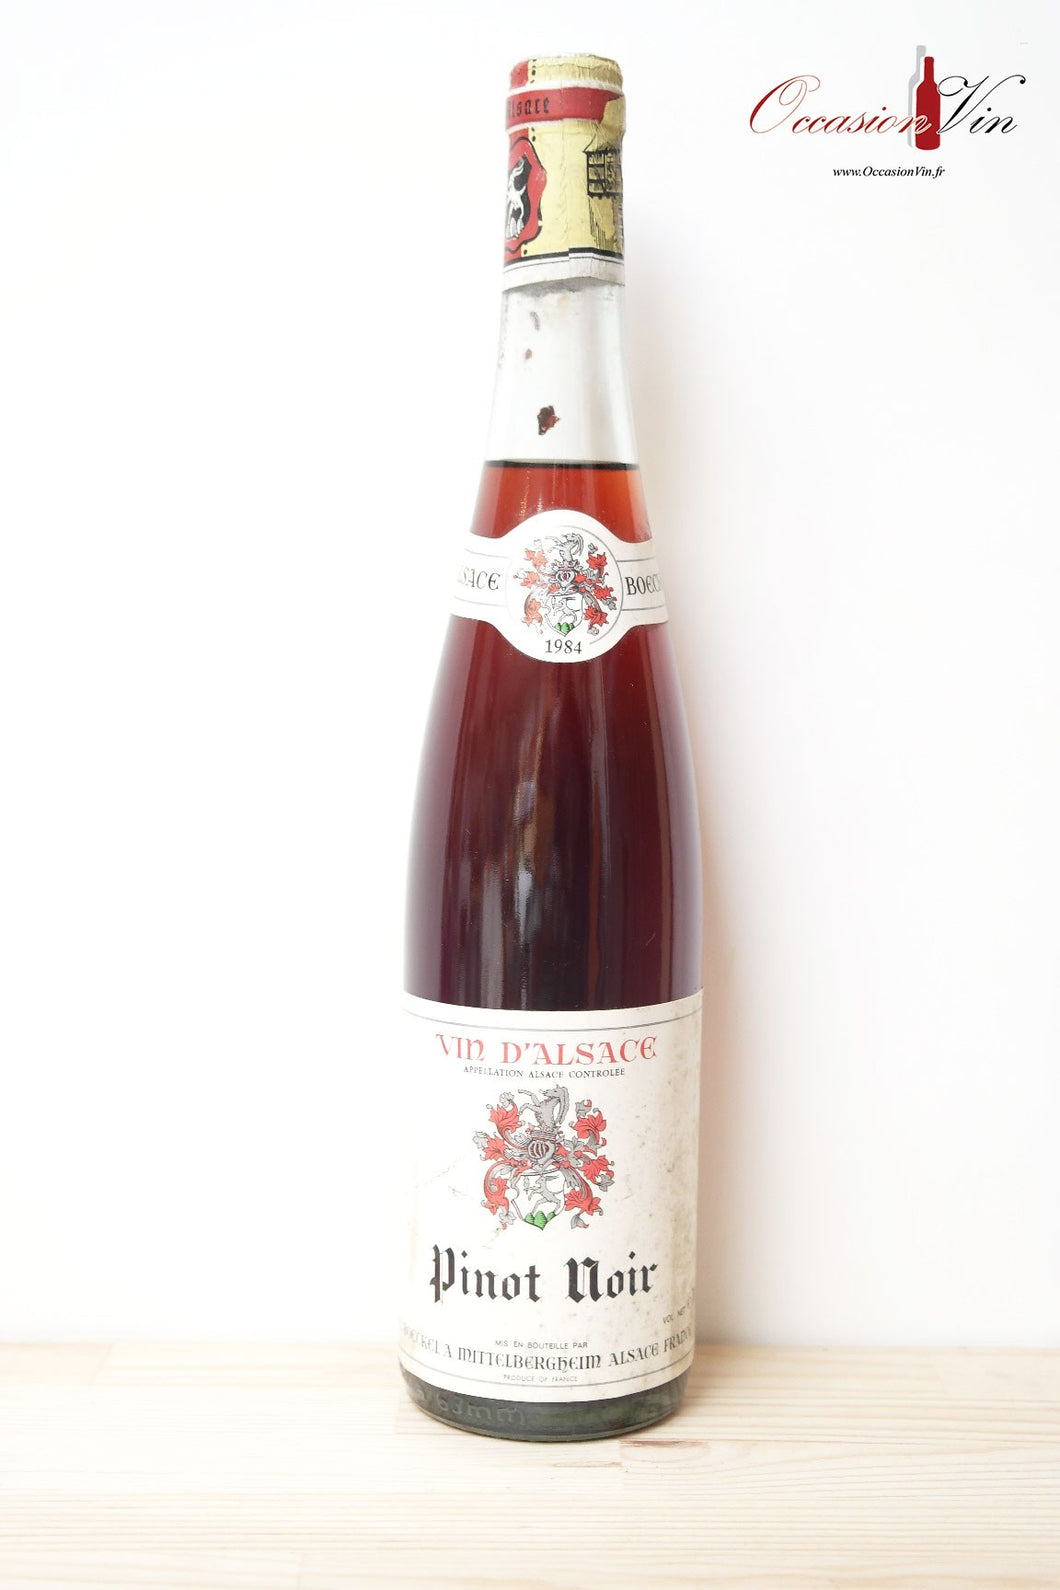 Pinot Noir Boeckel Vin 1984